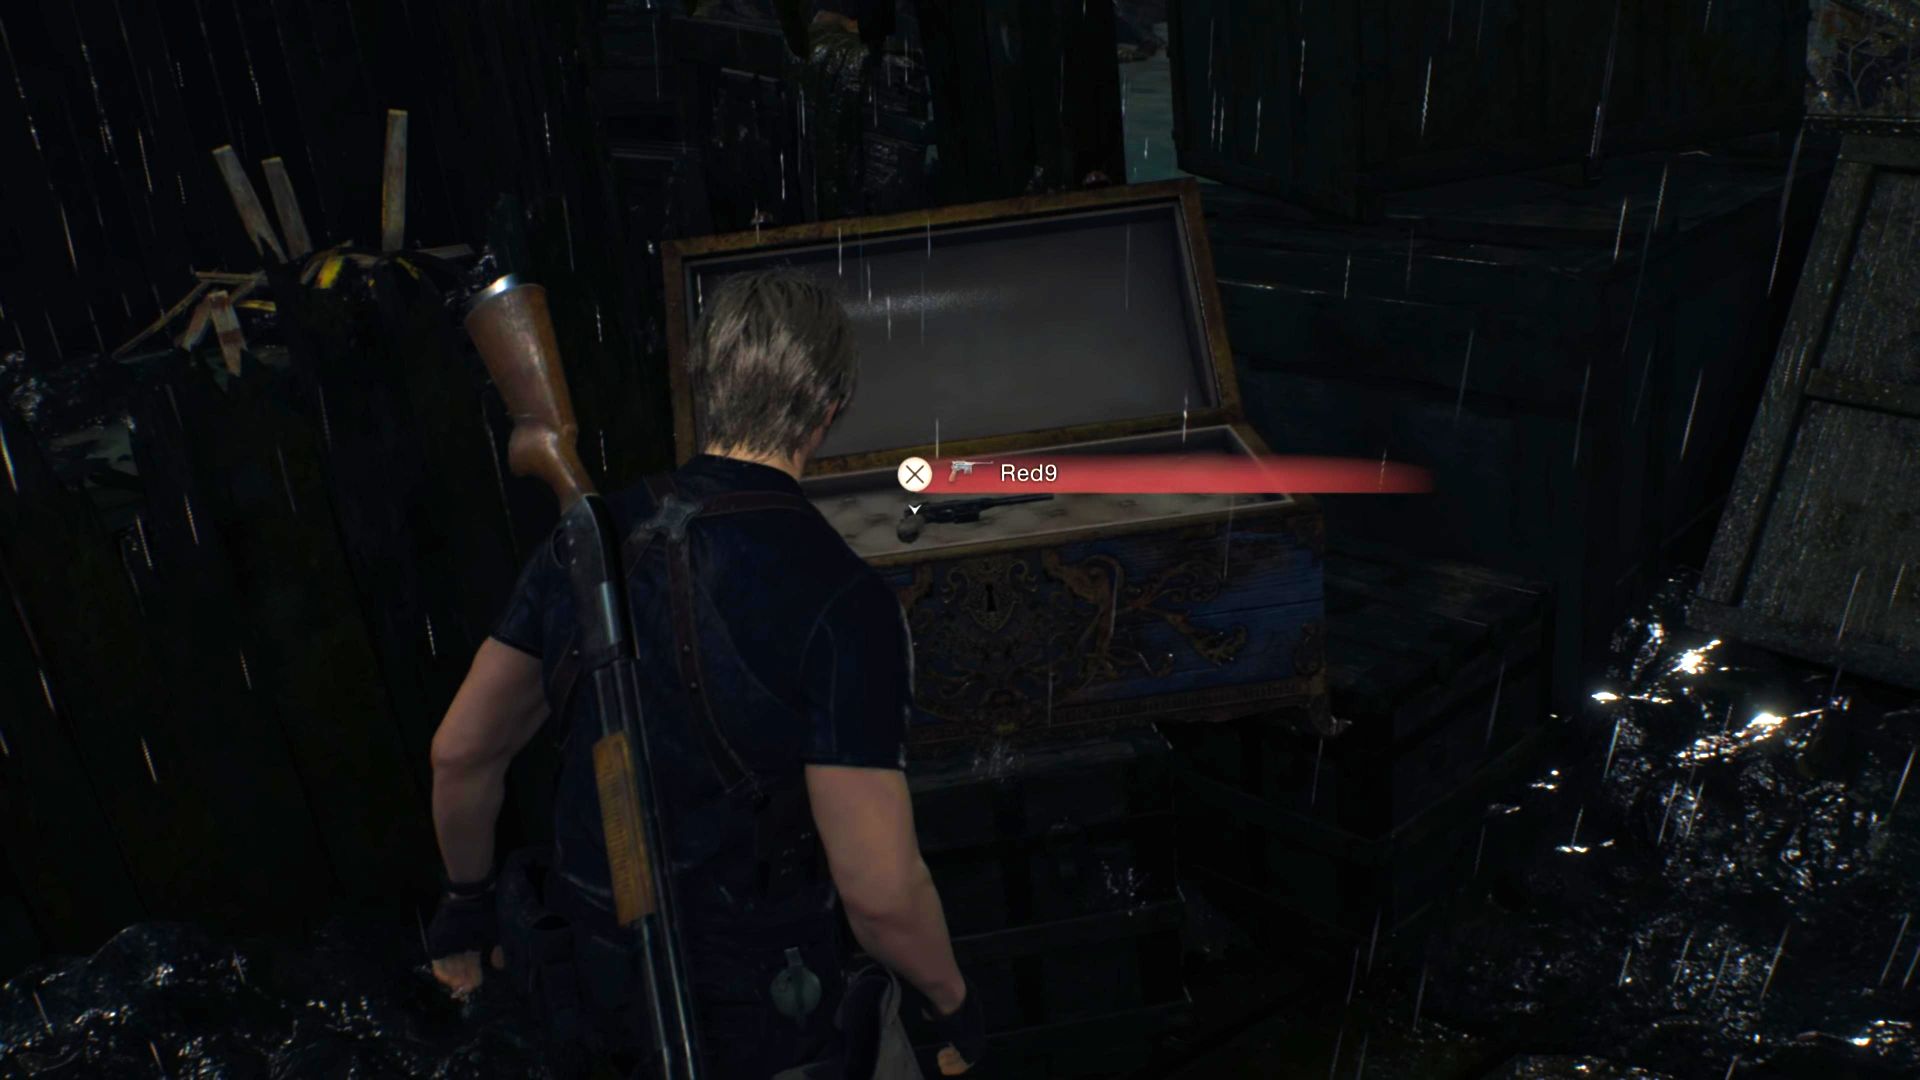 Resident Evil 4 Remake Red9 Ubicación: Leon se para antes del cofre azul que contiene el Red9 en la cubierta del bote en ruinas en el medio del lago